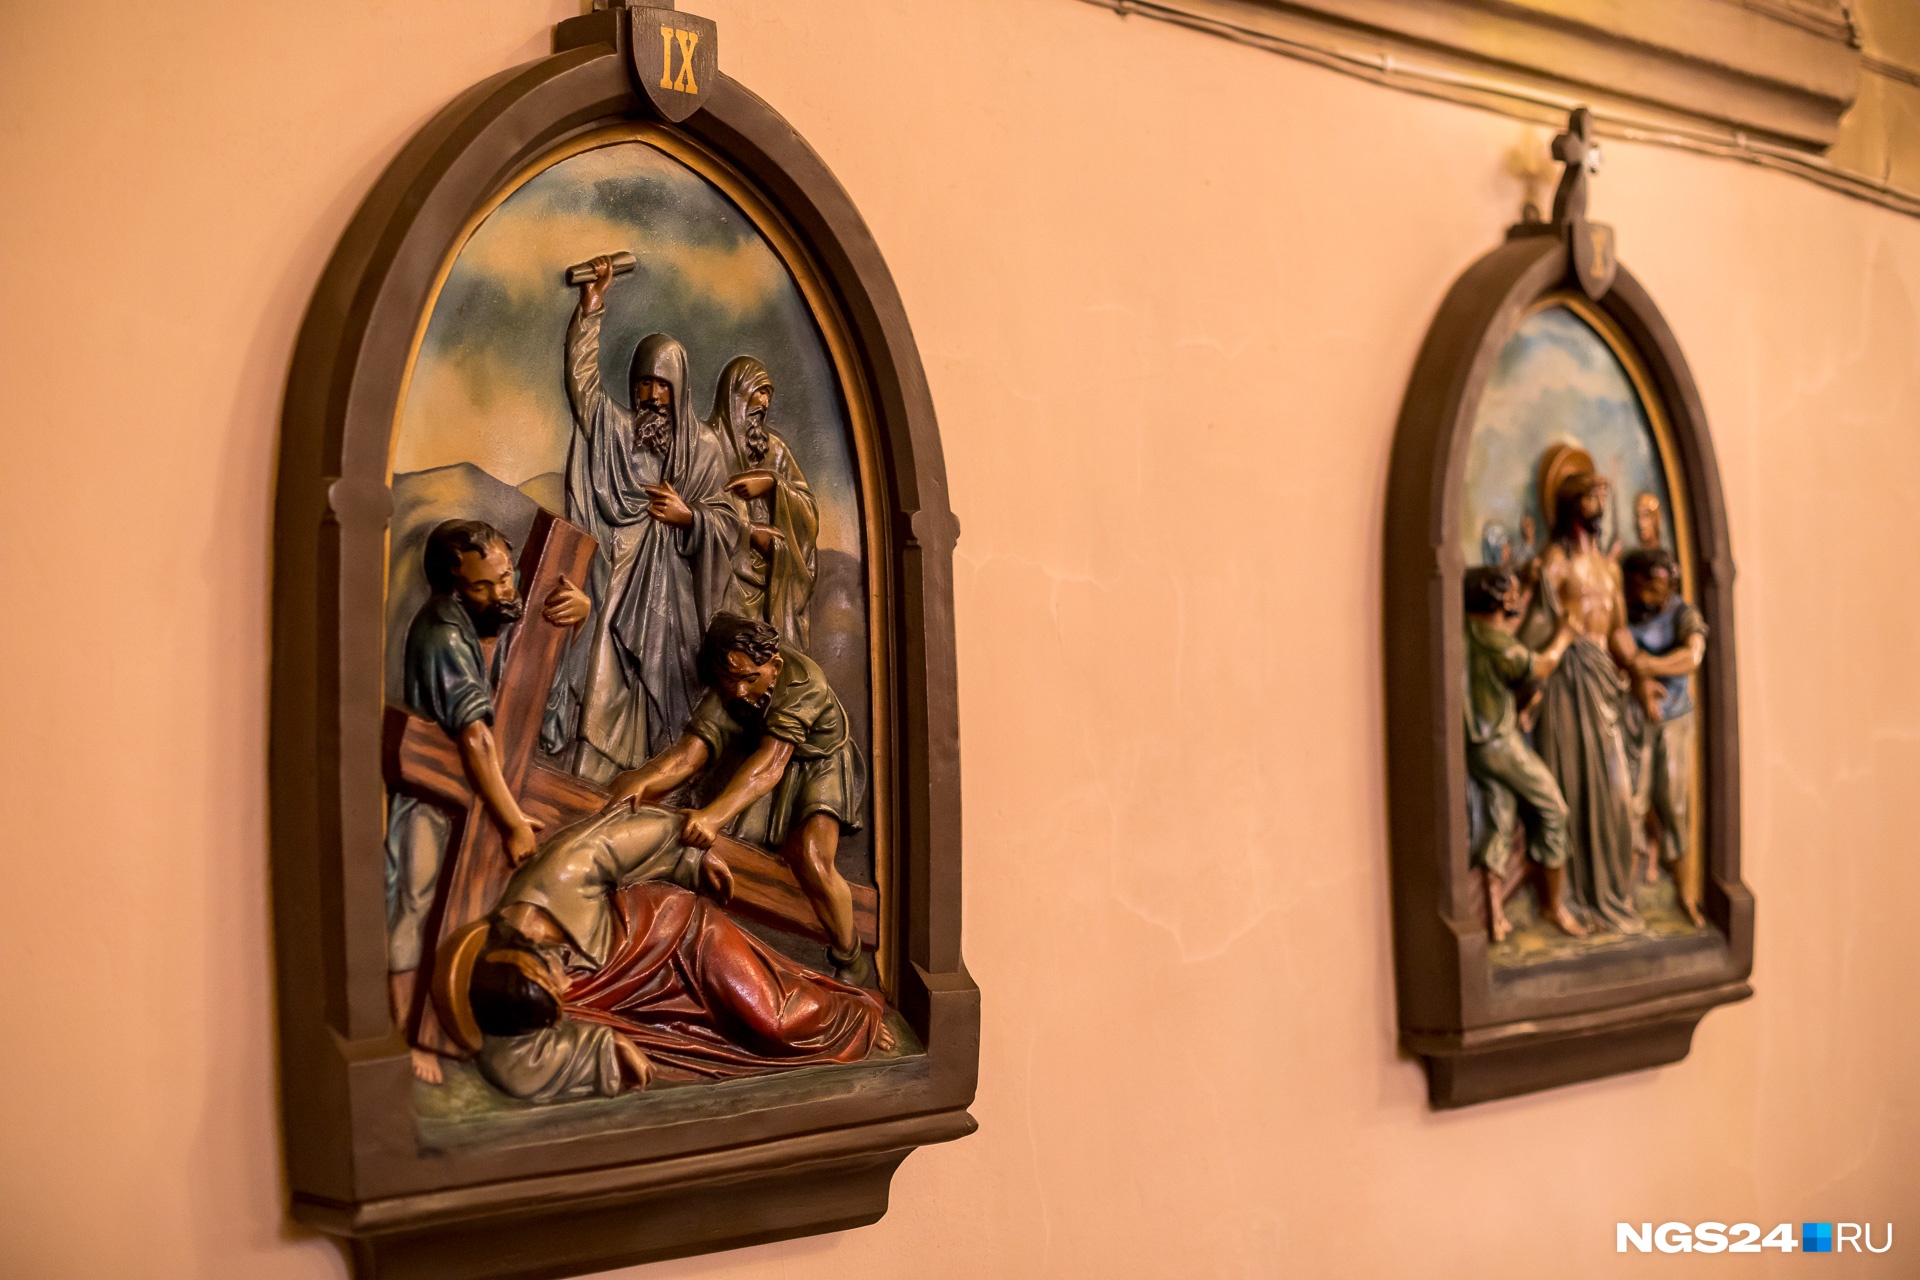 Стены зала украшают барельефы с изображением крестного пути Христа